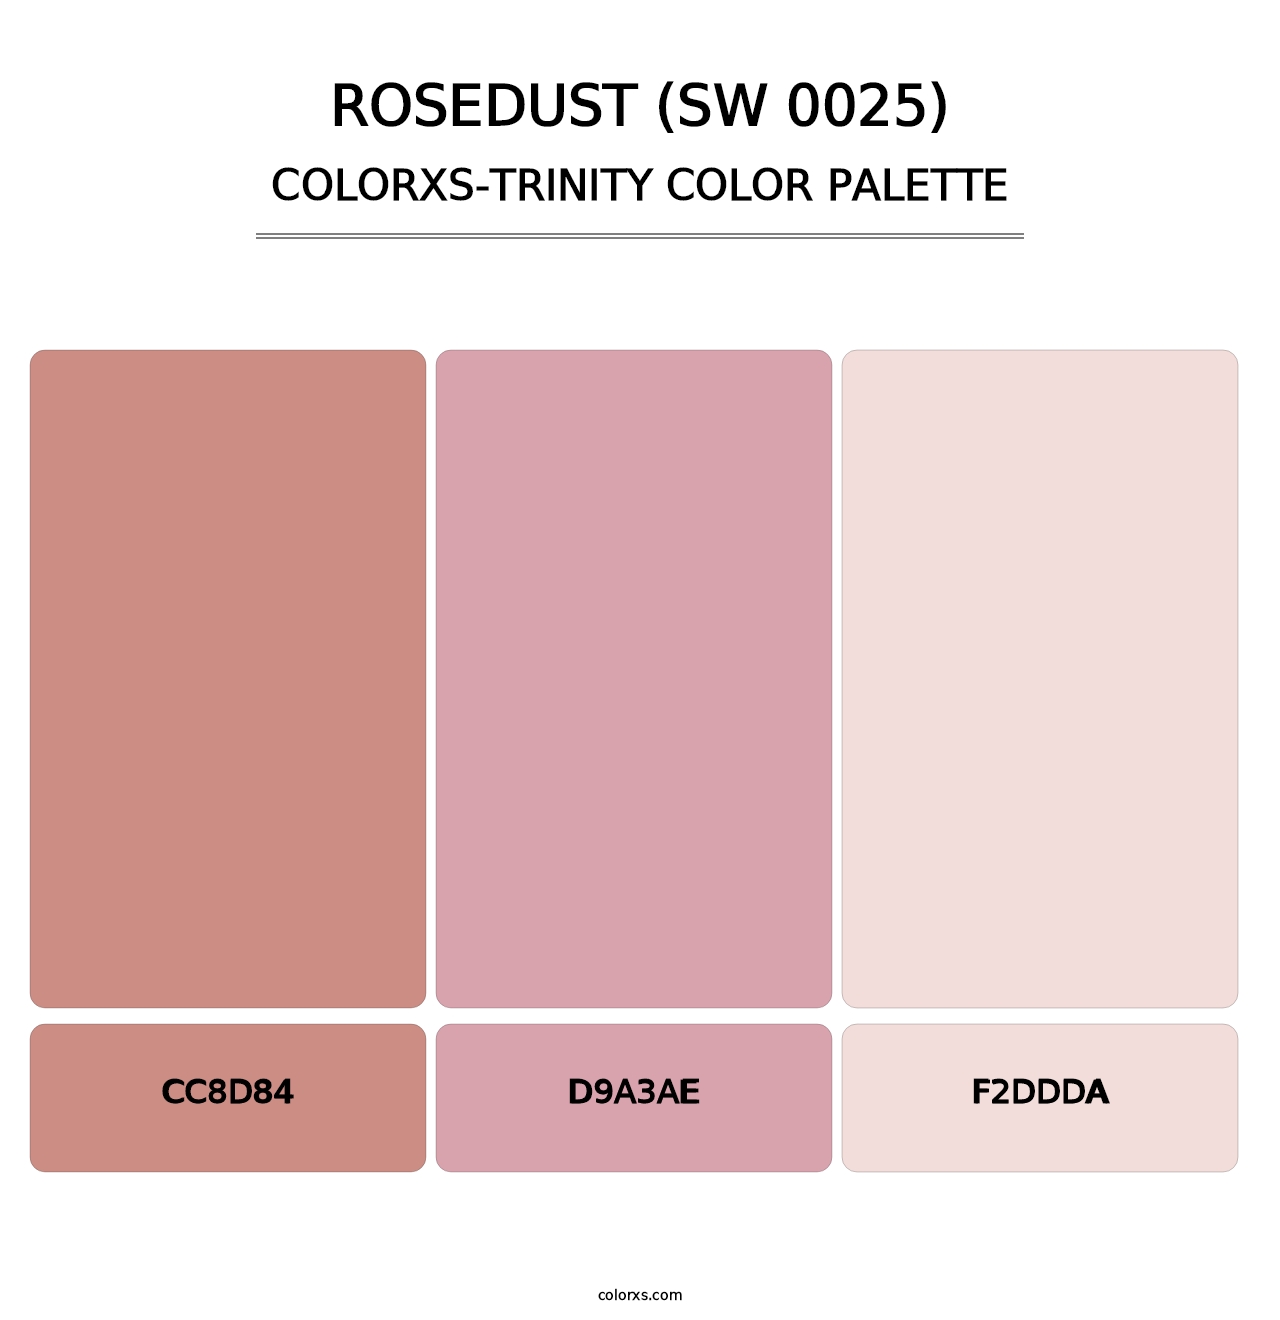 Rosedust (SW 0025) - Colorxs Trinity Palette